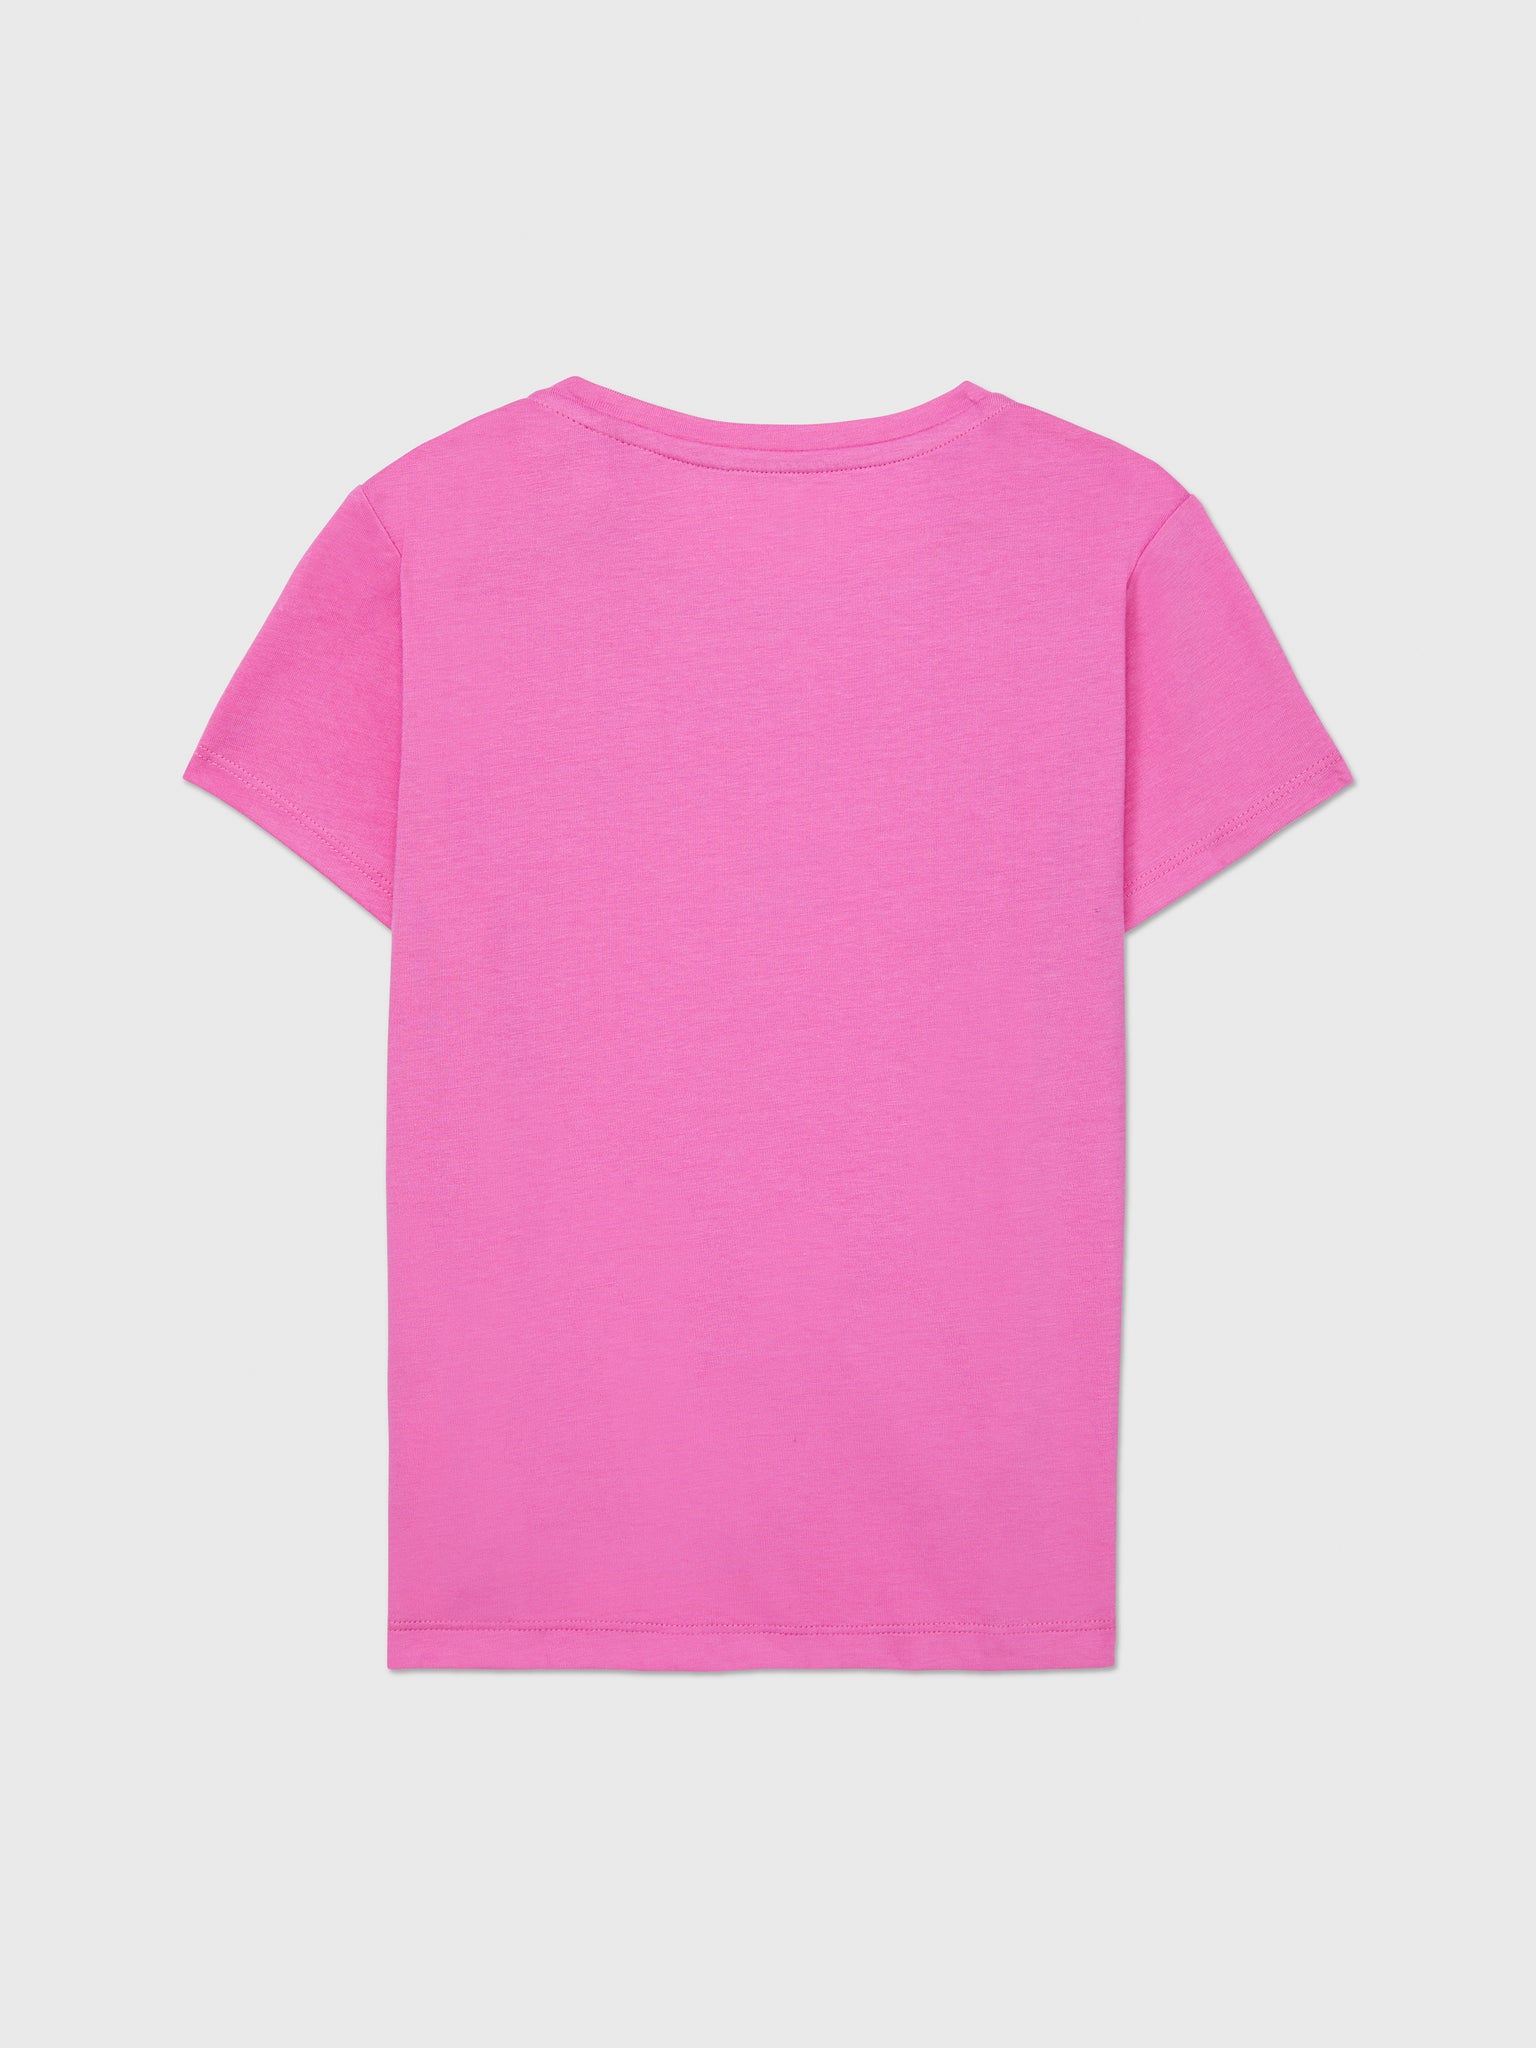 Sequin Flag Tee (Girls) - Pink